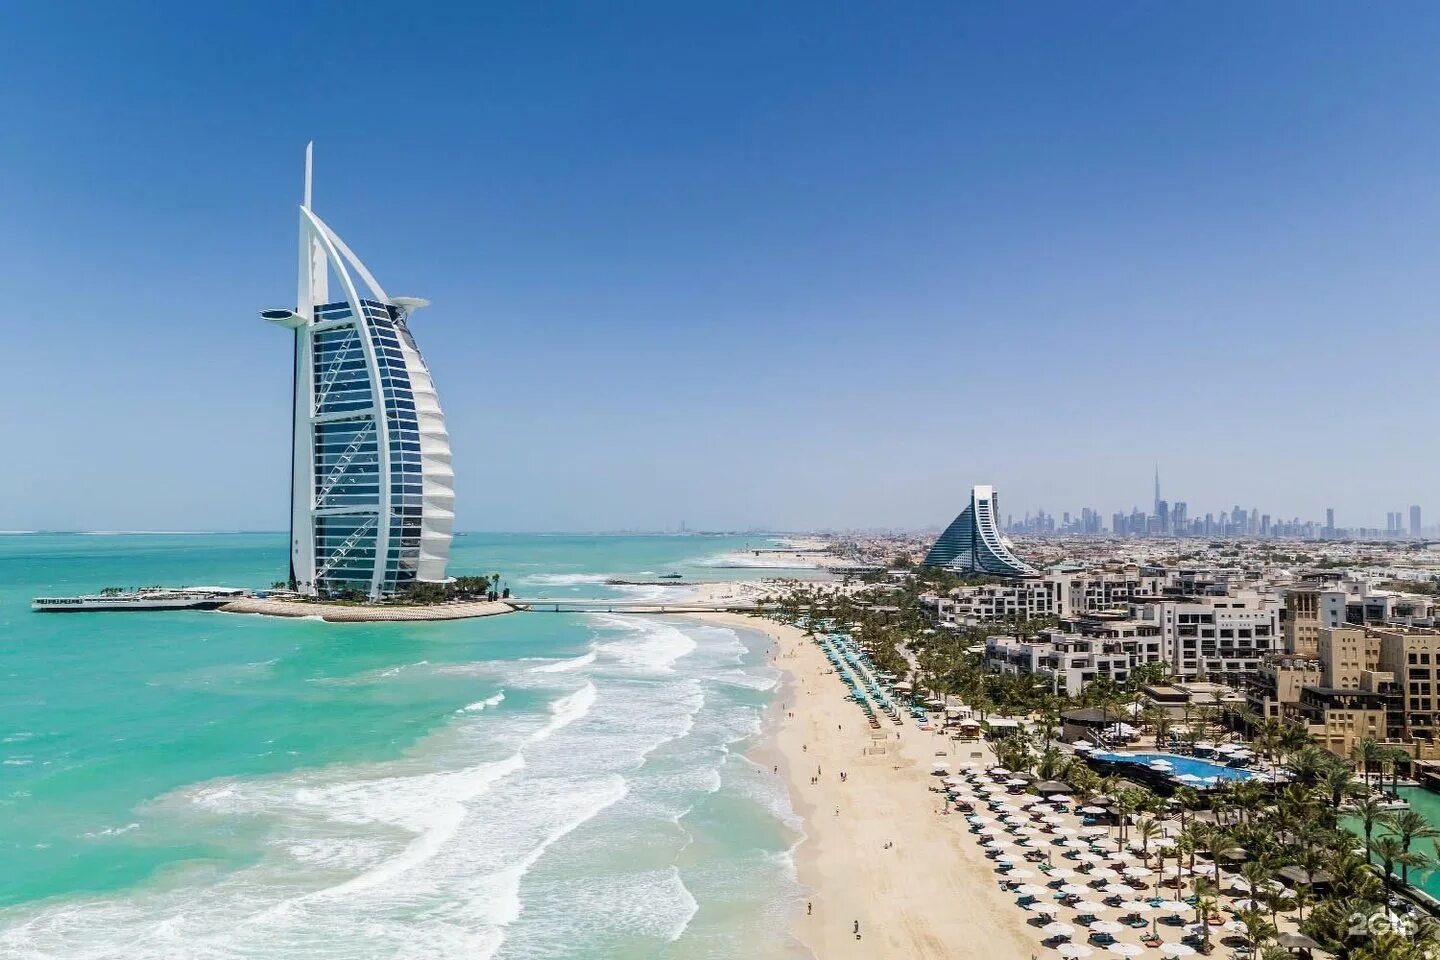 Пляж араб. Дубай Джумейра Бич. Отель в Дубае Jumeirah Beach Hotel. Пляж Джумейра Бич в Дубае. Пляж Бурдж Аль араб Дубай.